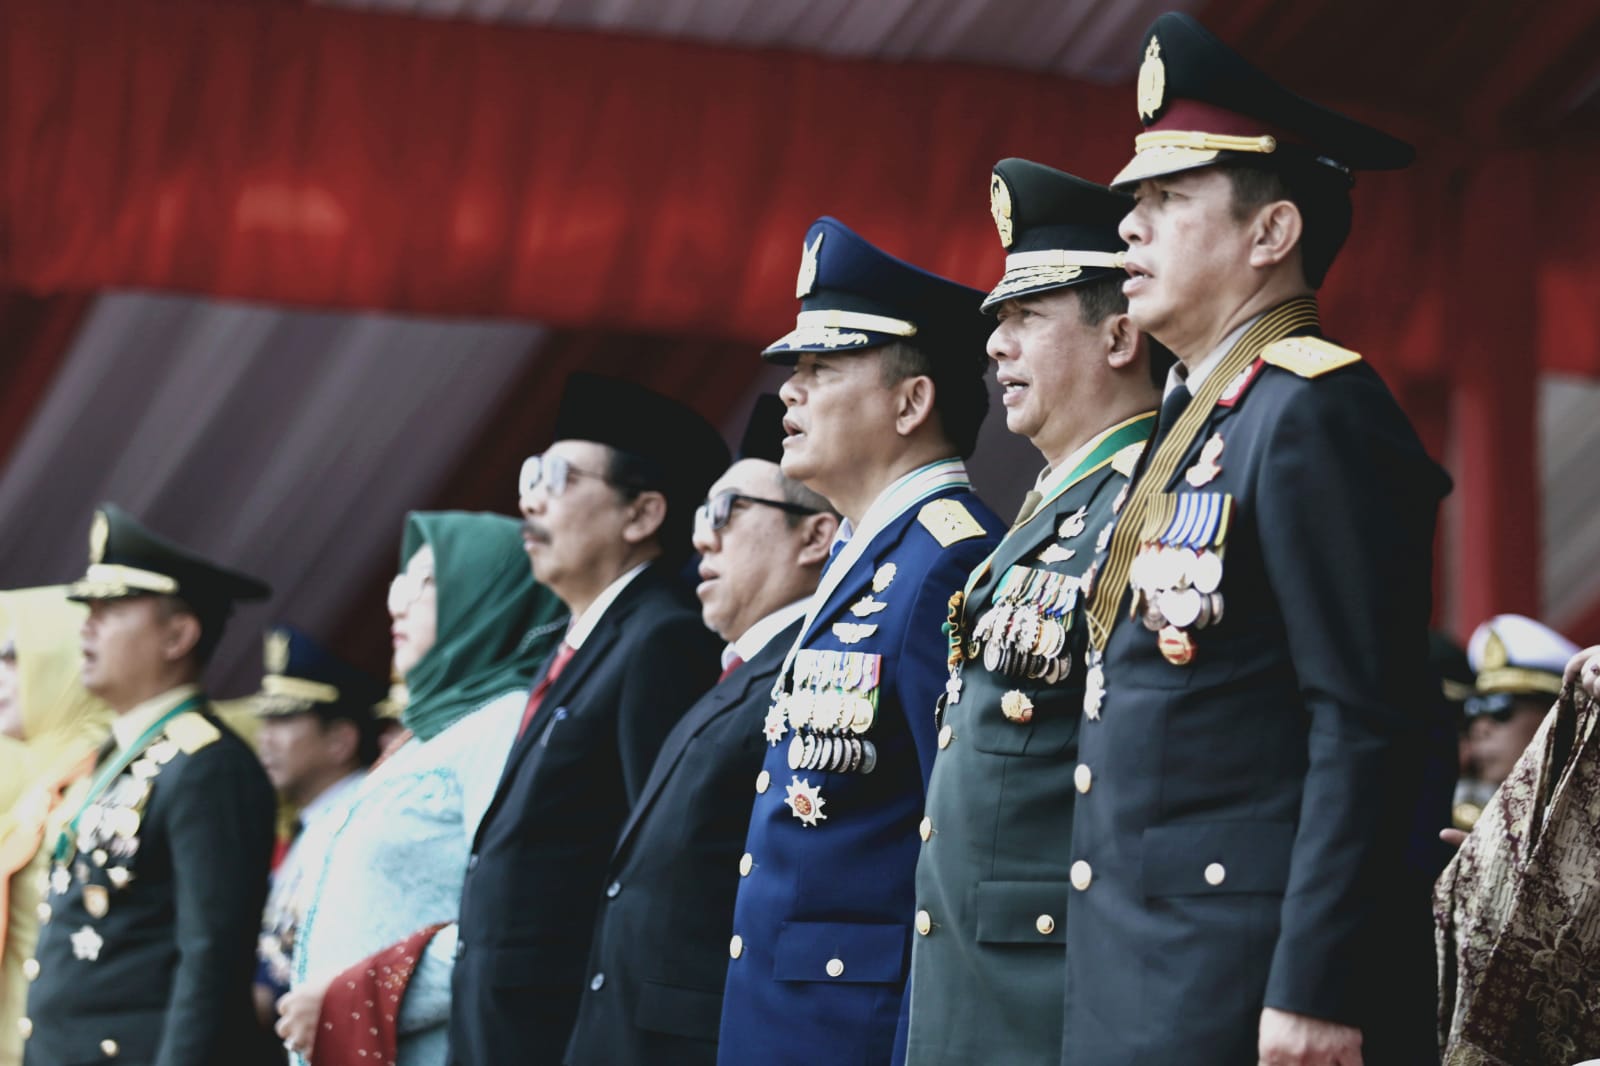 Kepala BNPB Letjen TNI Suharyanto, S.Sos., M.M. (kedua dari kanan) menghadiri upacara peringatan Hari Ulang Tahun (HUT) ke-78 Tentara Nasional Indonesia (TNI) yang dihelat di Monumen Nasional, Jakarta, Kamis (5/10). 